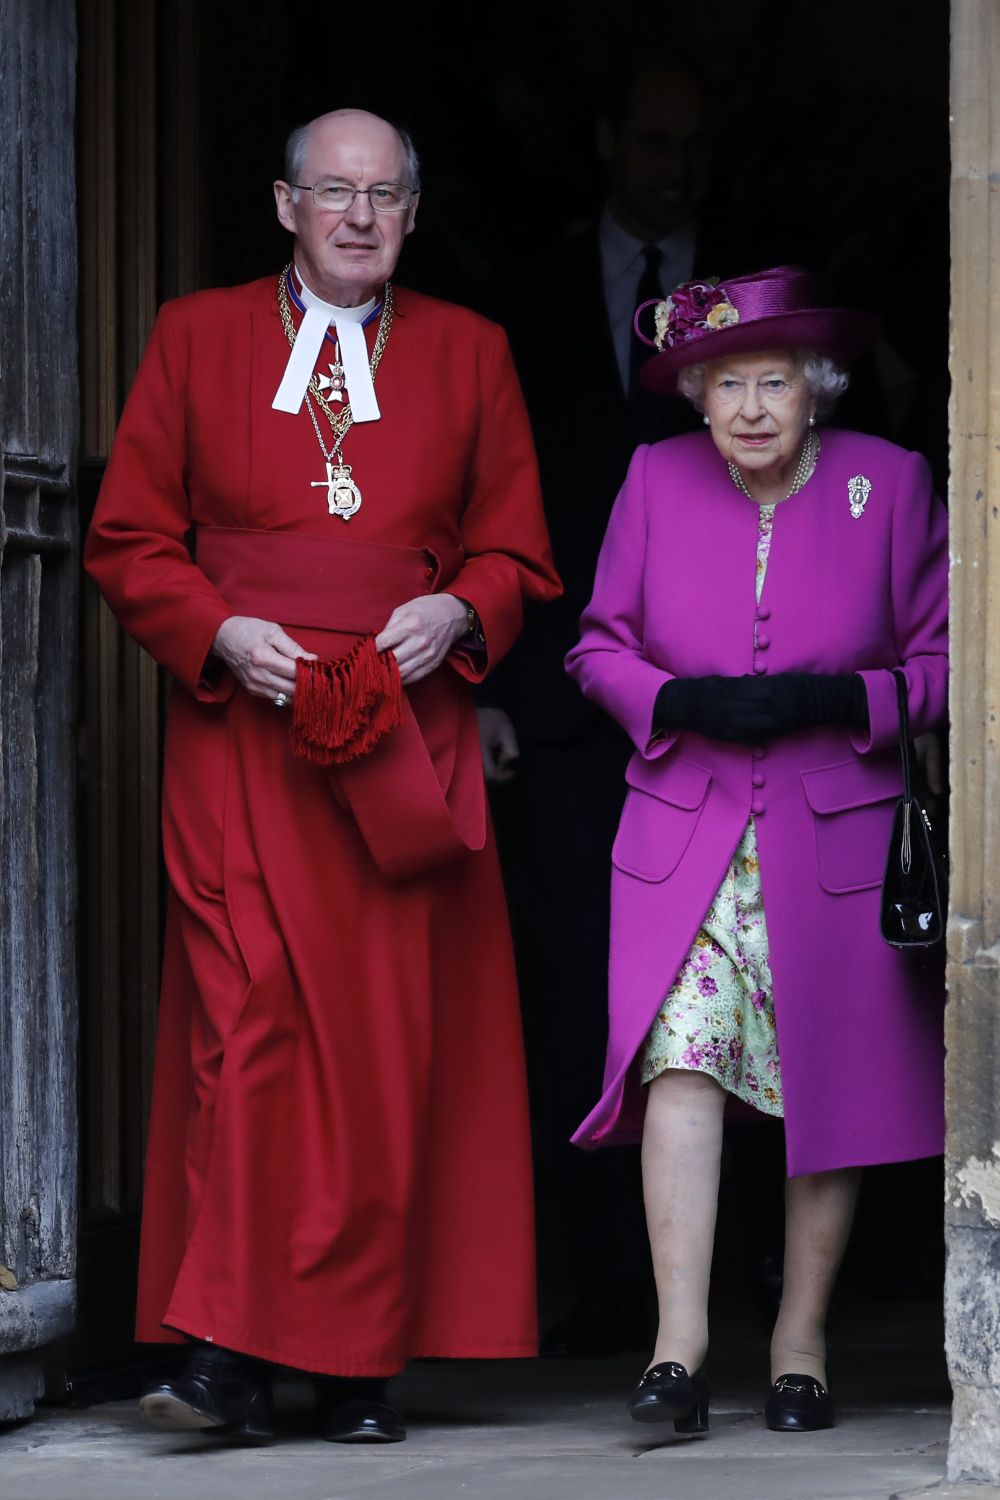 Британската кралица Елизабет Втора, принц Уилям, съпругата му Кейт Мидълтън и други членове на кралското семейство се събраха на великденска църковна служба в параклиса Сейнт Джордж в Уиндзор.<br />
 <br />
Принц Уилям и съпругата му пристигнаха с няколко минути закъснение, а принц Хари и годеницата му Меган Маркъл отсъстваха от церемонията.<br />
 